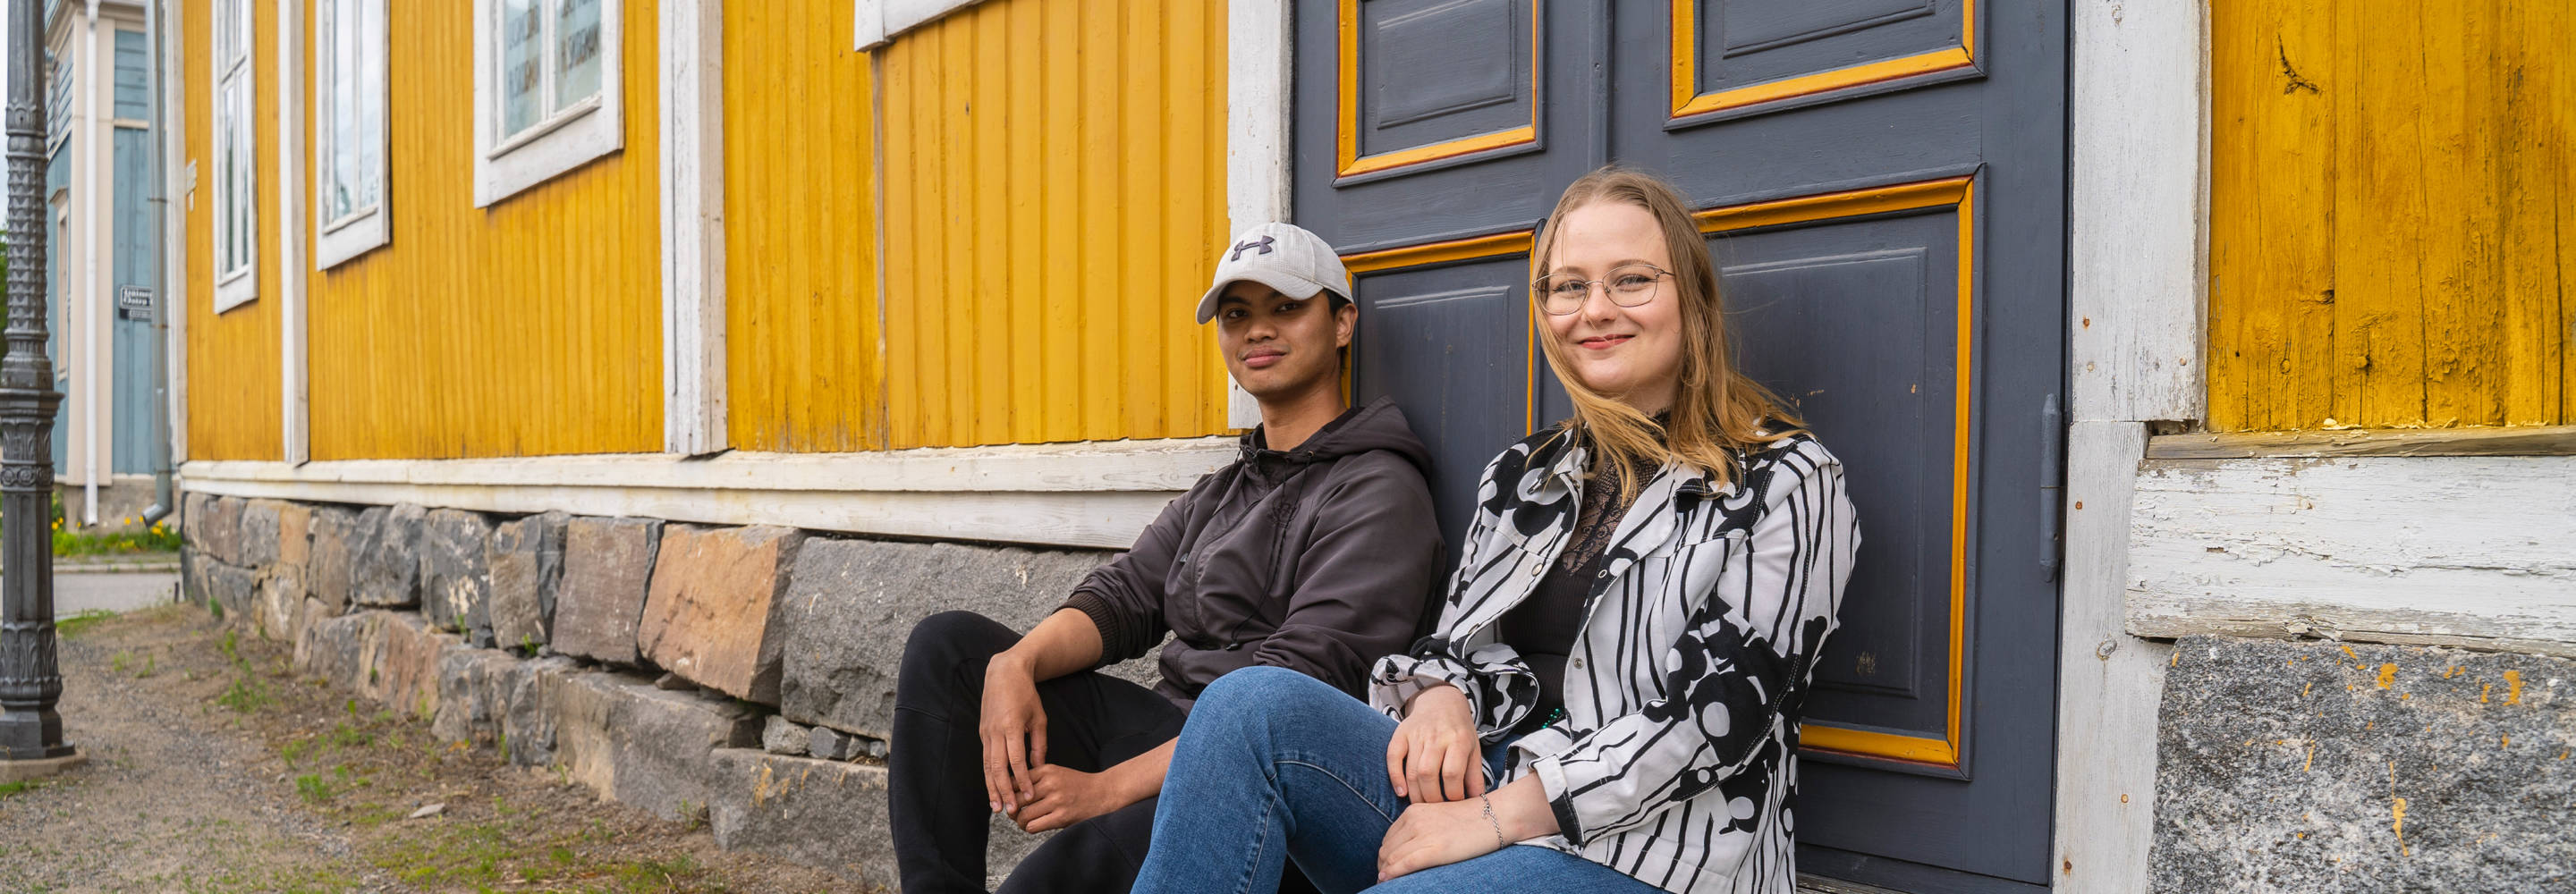 Yhteisöpedagogiopiskelijat Theo ja Sina istuvat Neristanissa vanhan keltaisen talon portailla ja hymyilevät kameralle